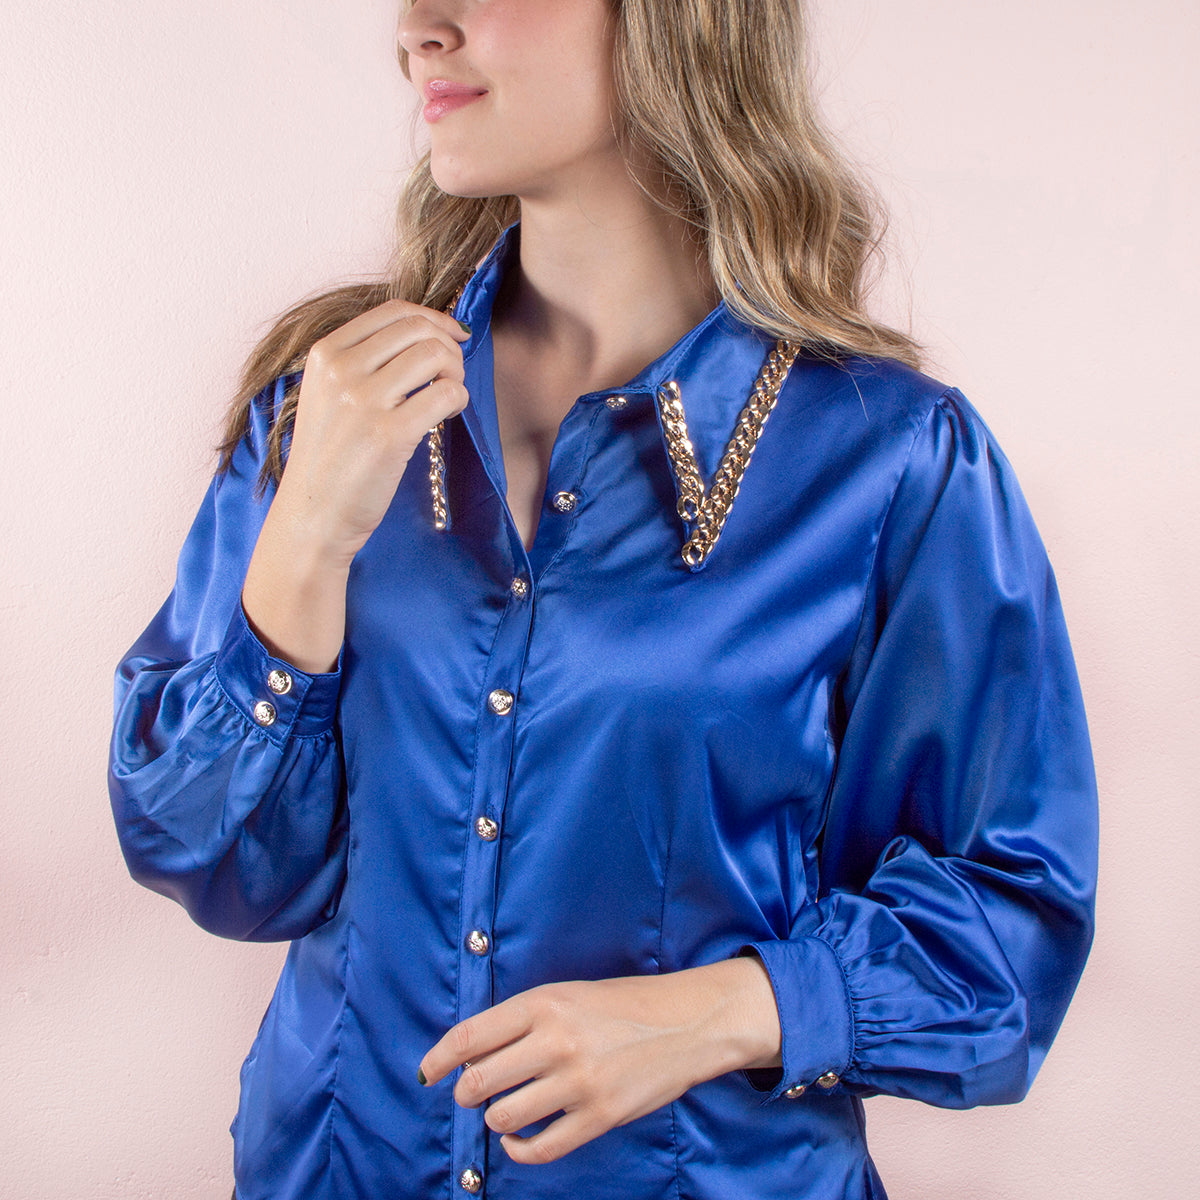 Blusa manga larga color azul con detalle de cadena